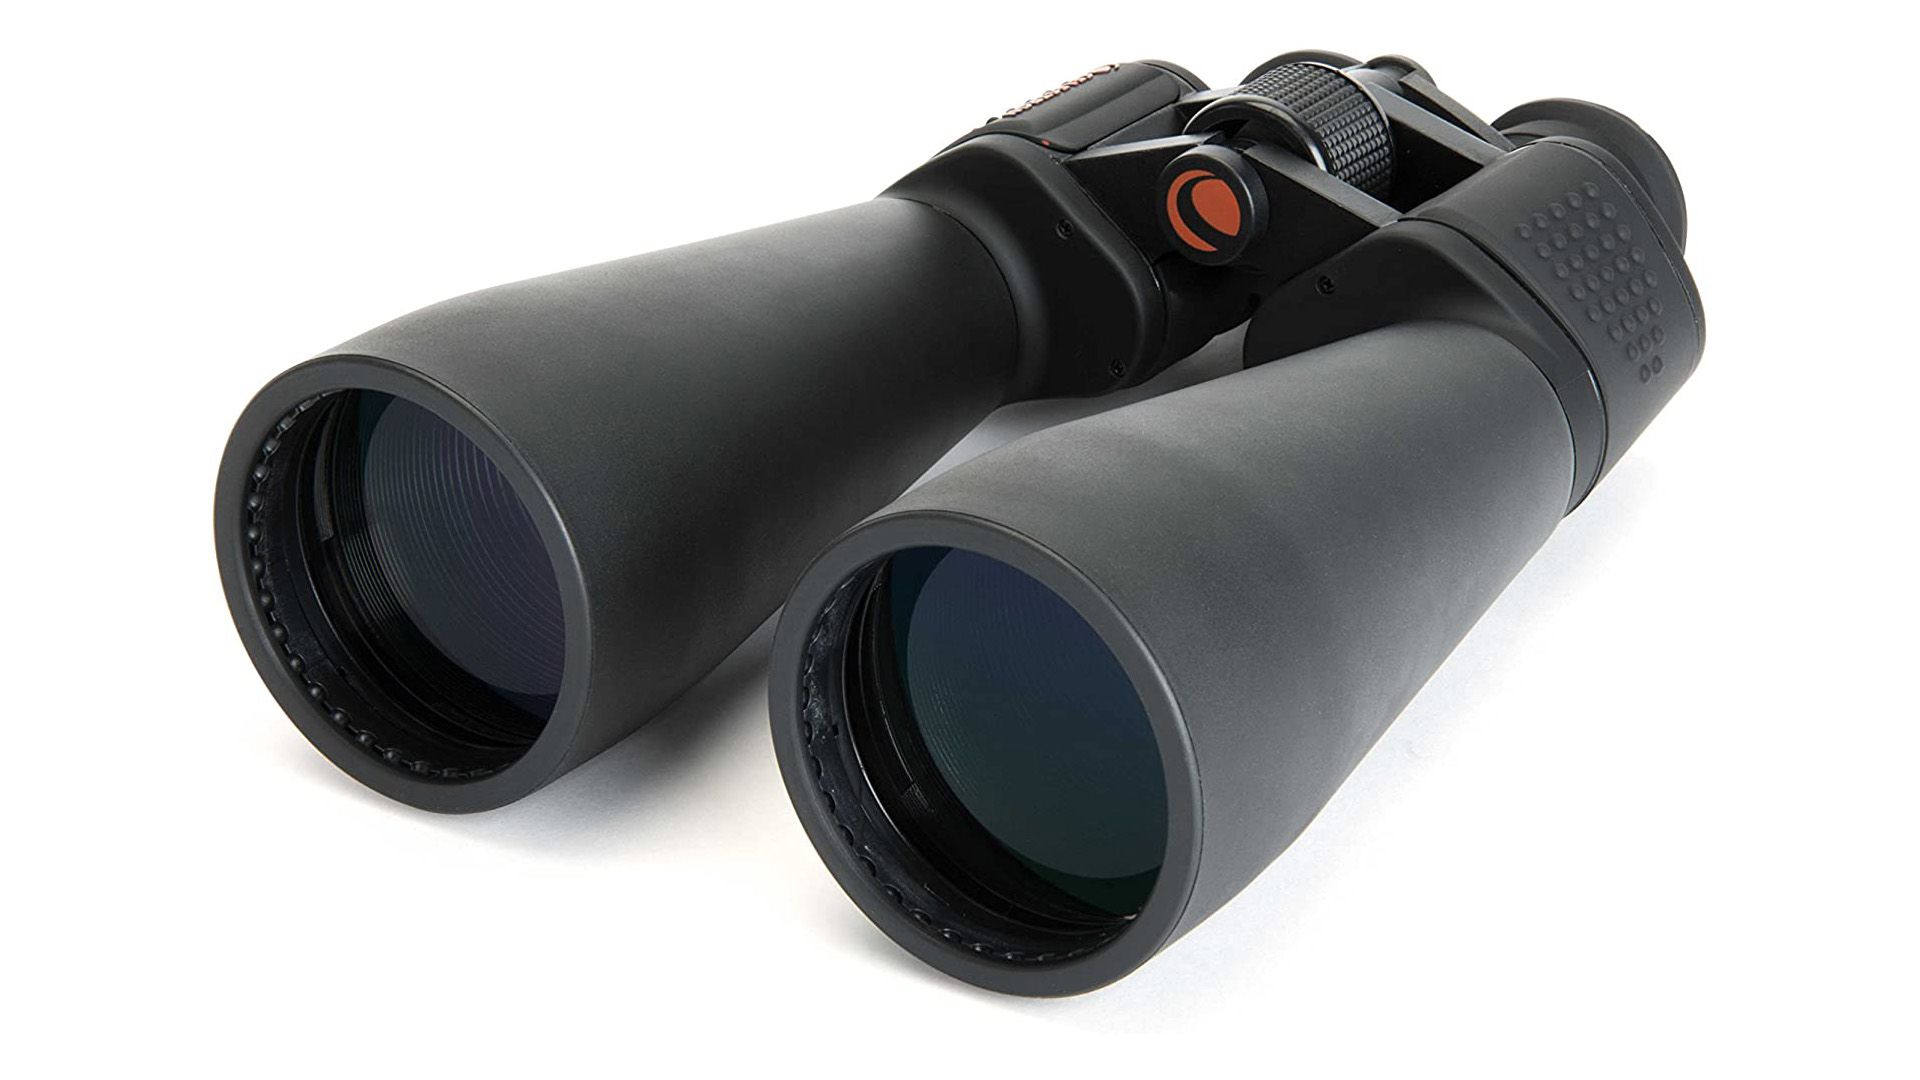 The Celestron SkyMaster 25x70 binoculars